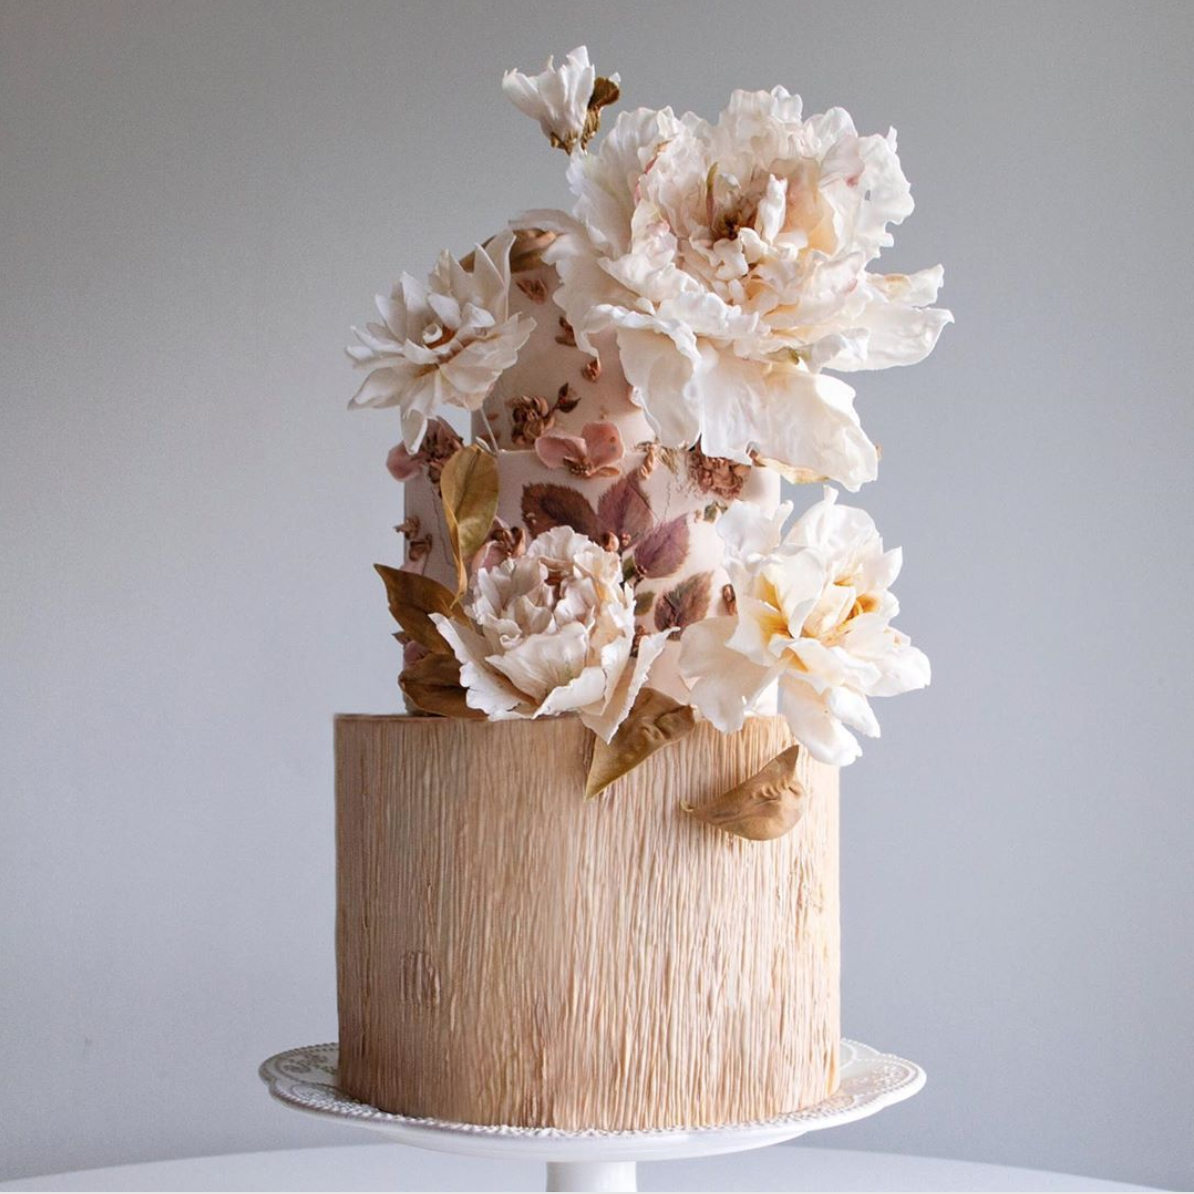 Unique wedding cakes by Cynthia Irani